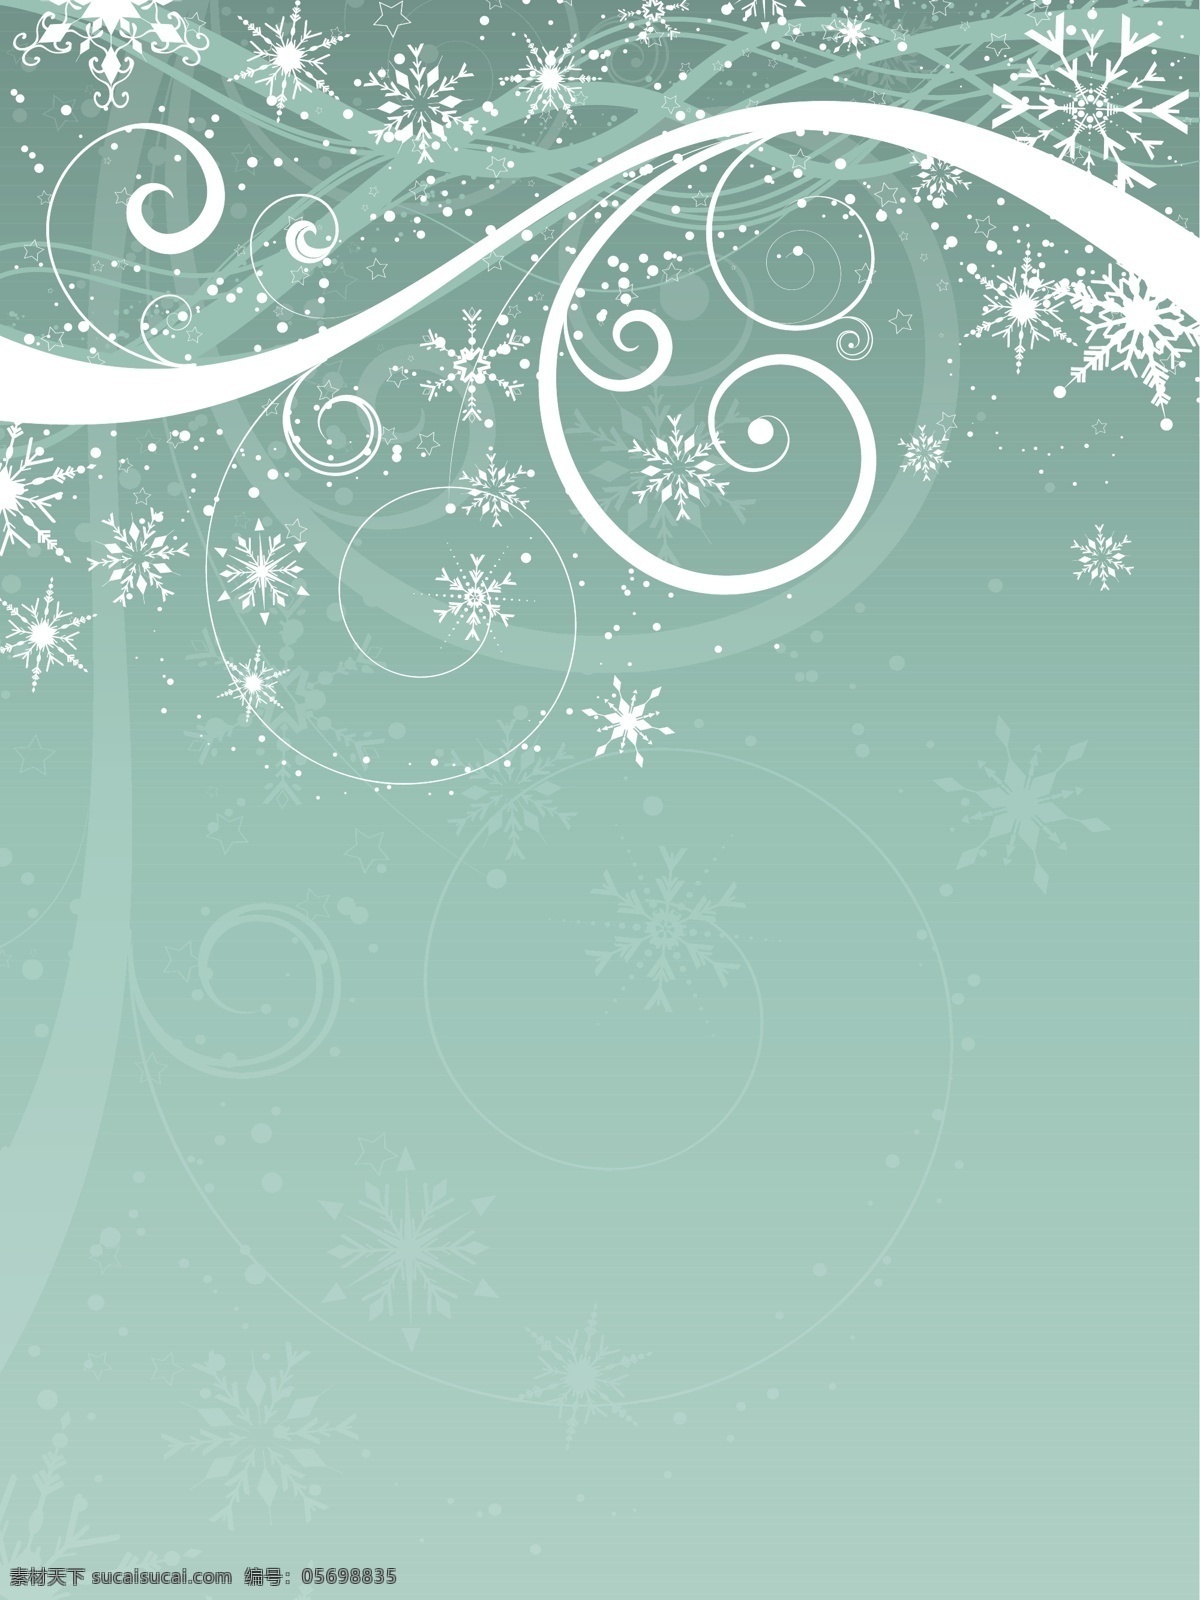 雪花 背景 轮廓 圣诞节 抽象的 雪 圣诞快乐 冬天 圣诞背景 剪影 庆祝节日 冬天雪花 季节的问候 雪的背景 季节 节日快乐 绿色